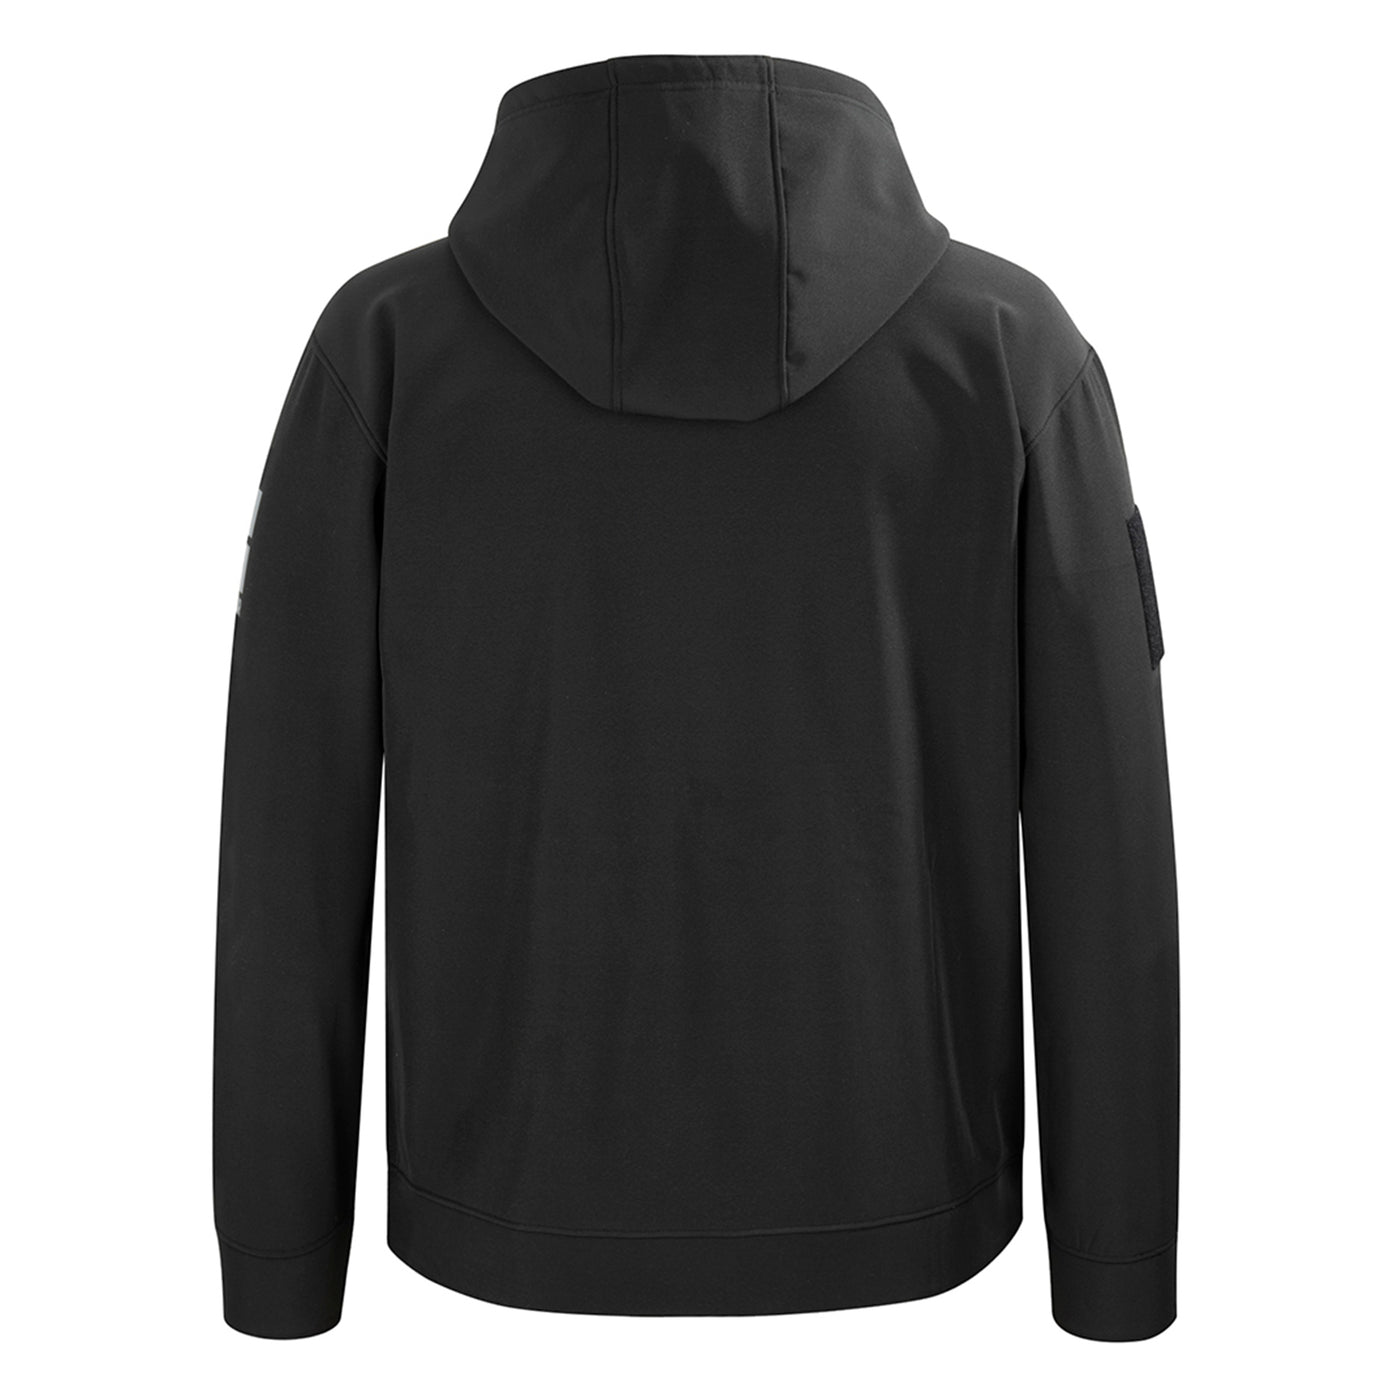 Comfort Stretch Acid Wash Hoodie Sweatshirt / Airborne – Chillwater Apparel